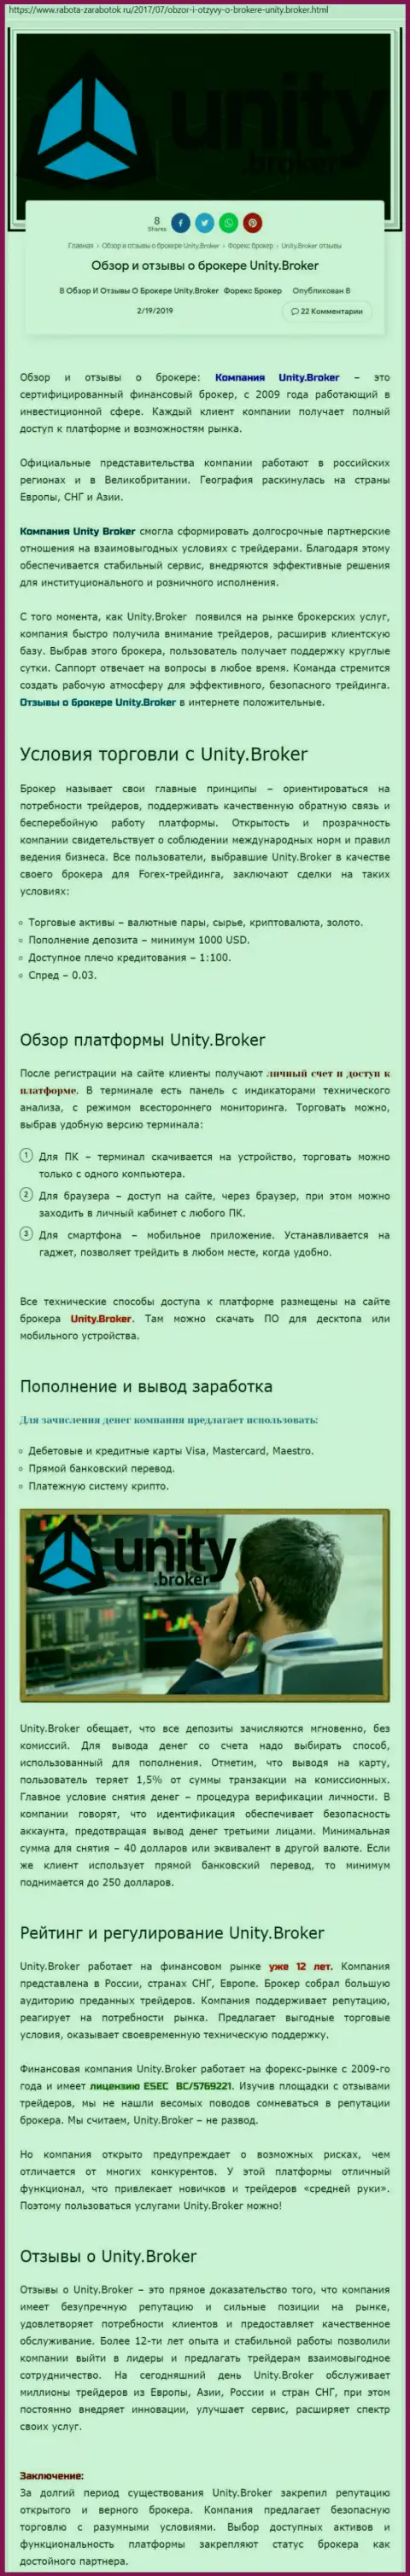 Обзорная информация FOREX компании Unity Broker на сайте rabota-zarabotok ru